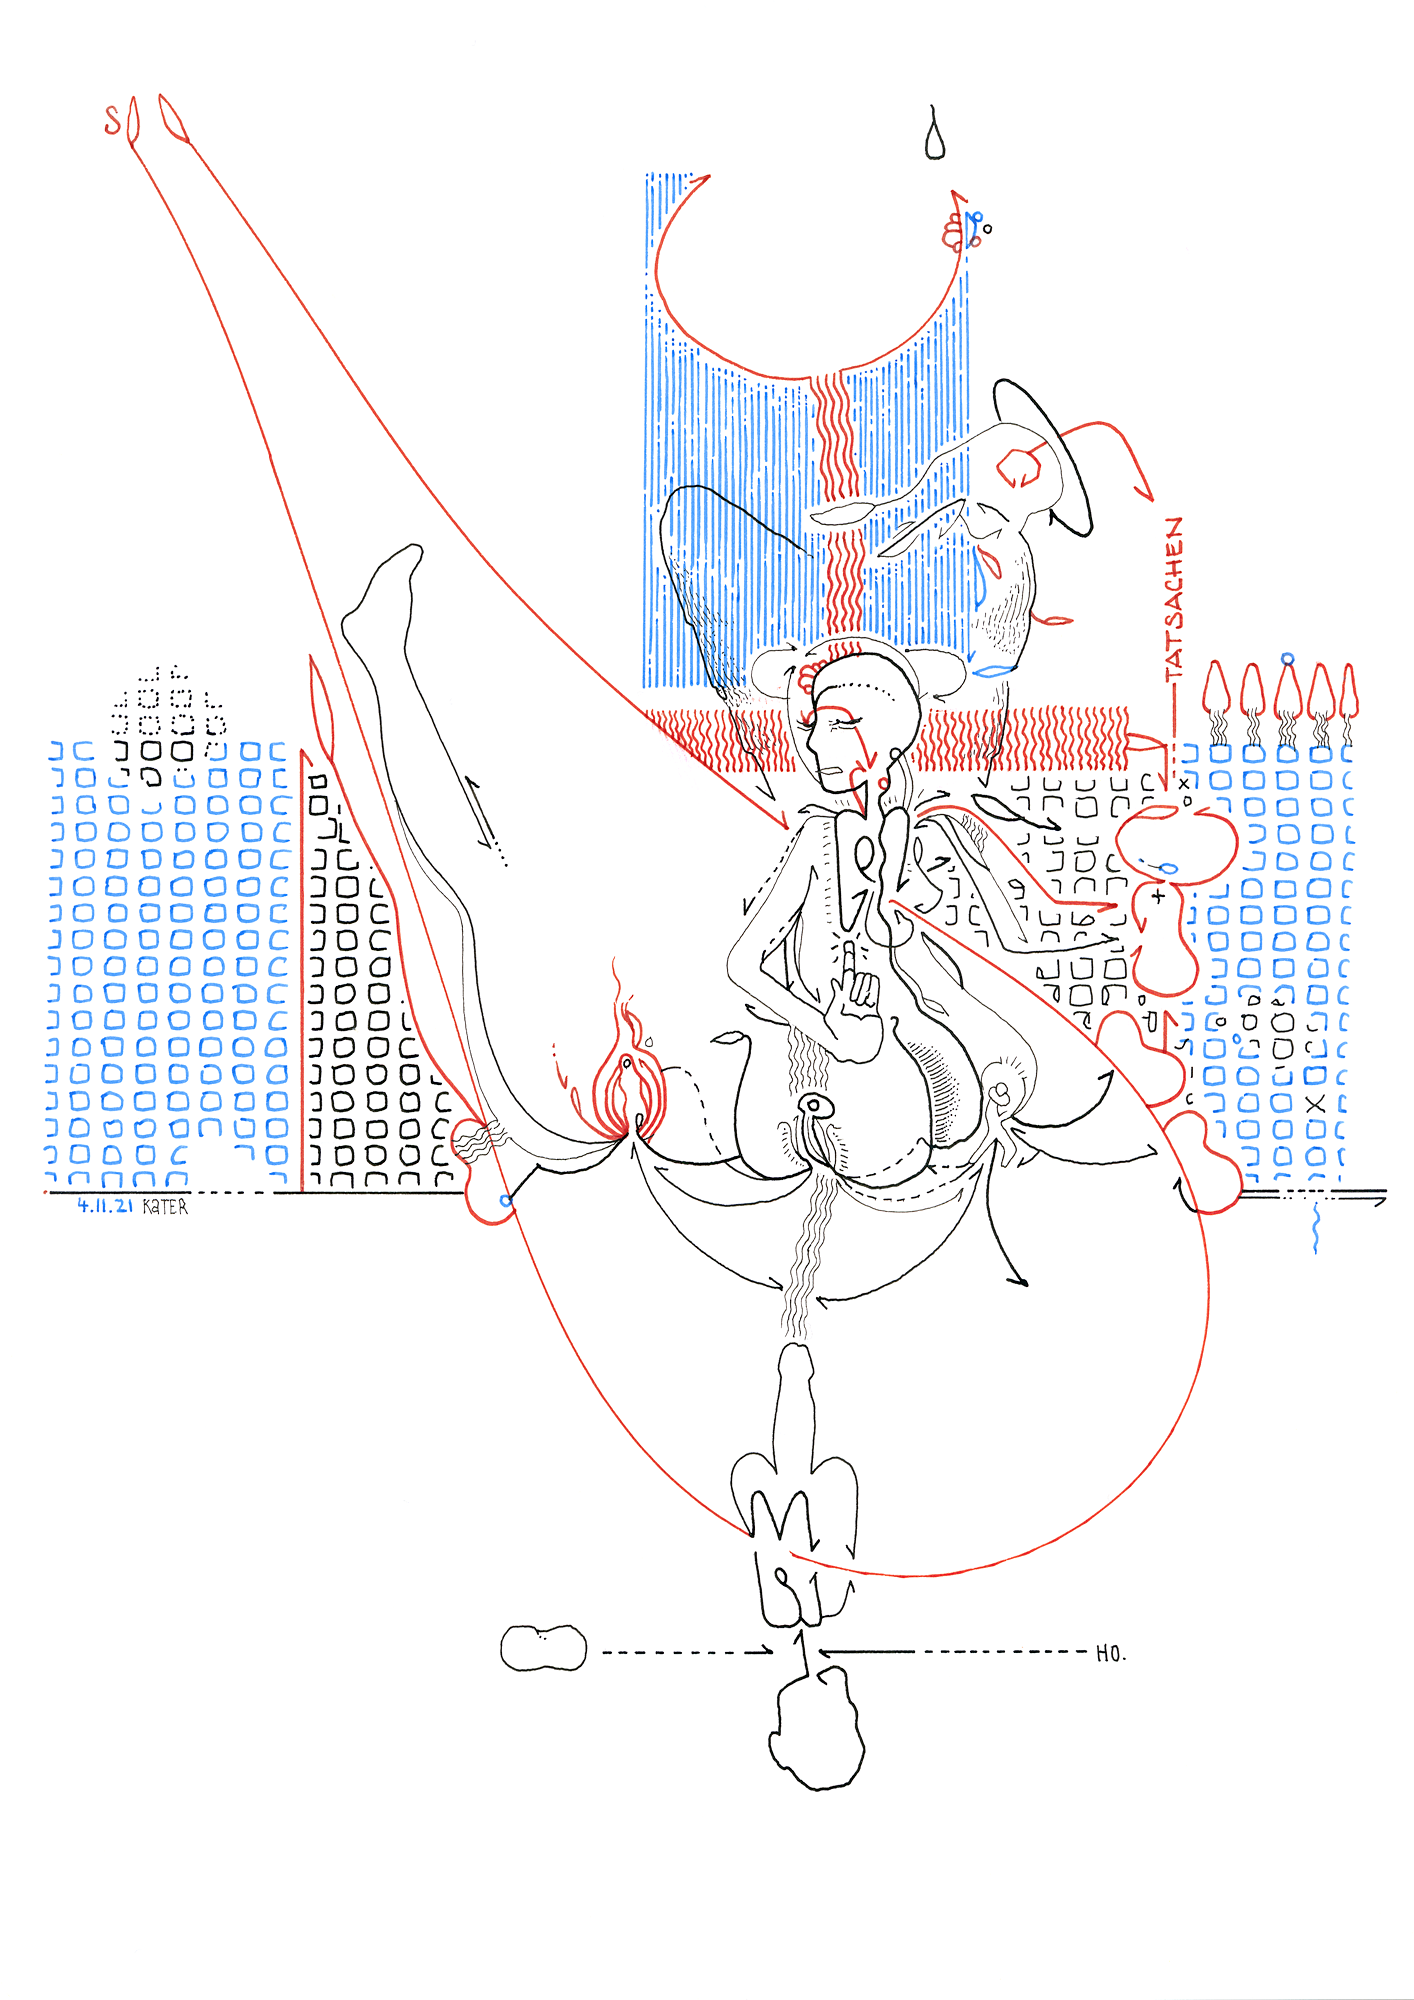 Hannes Kater: Tageszeichnung (Zeichnung/drawing) vom 04.11.2021 (1414 x 2000 Pixel)